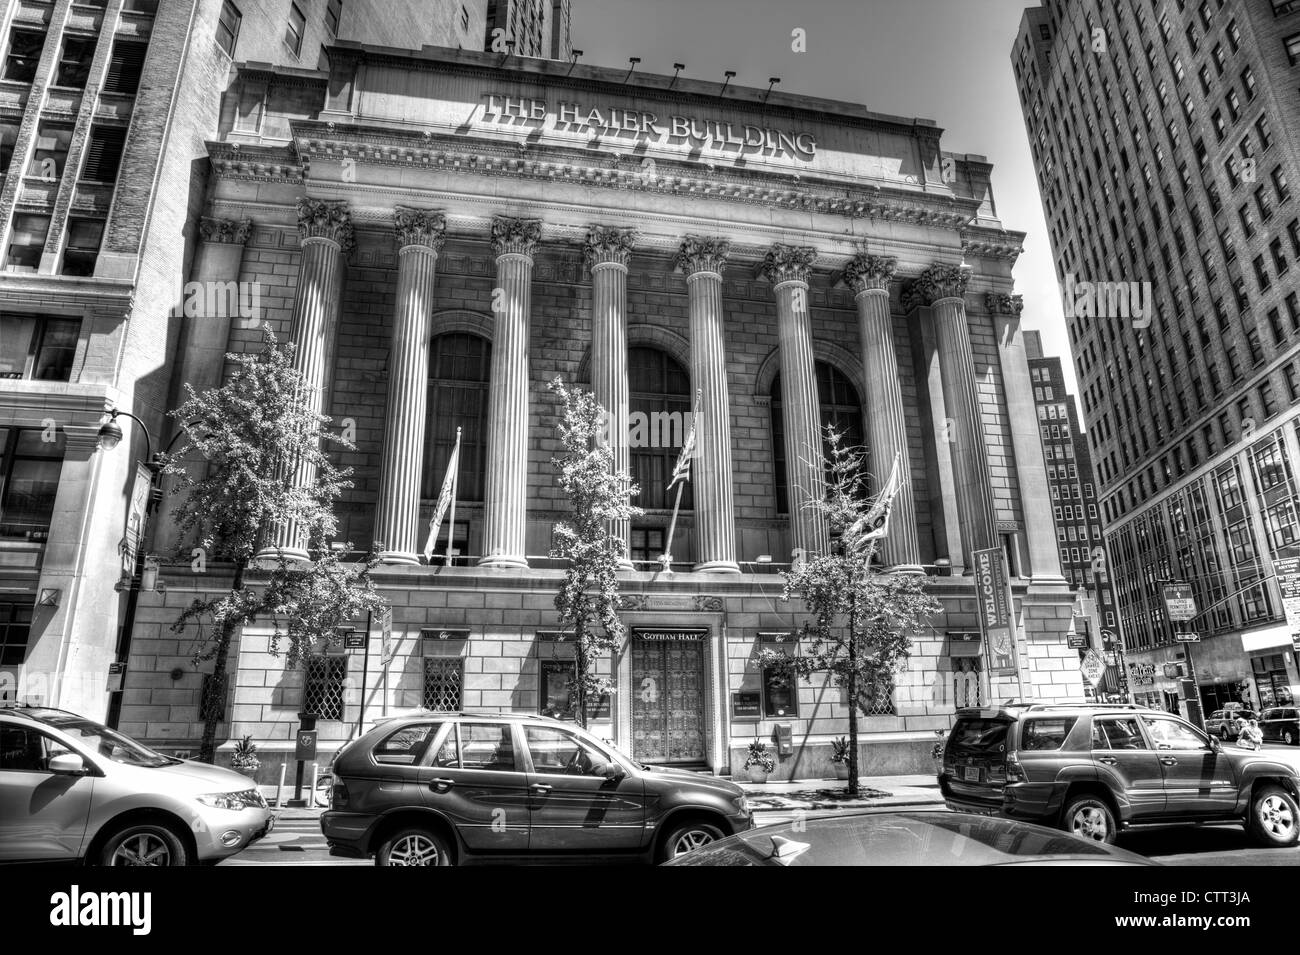 Haier Building / Gotham Hall d'épargne Greenwich New York City Manhattan bâtiment emblématique avant extérieure façade Banque D'Images